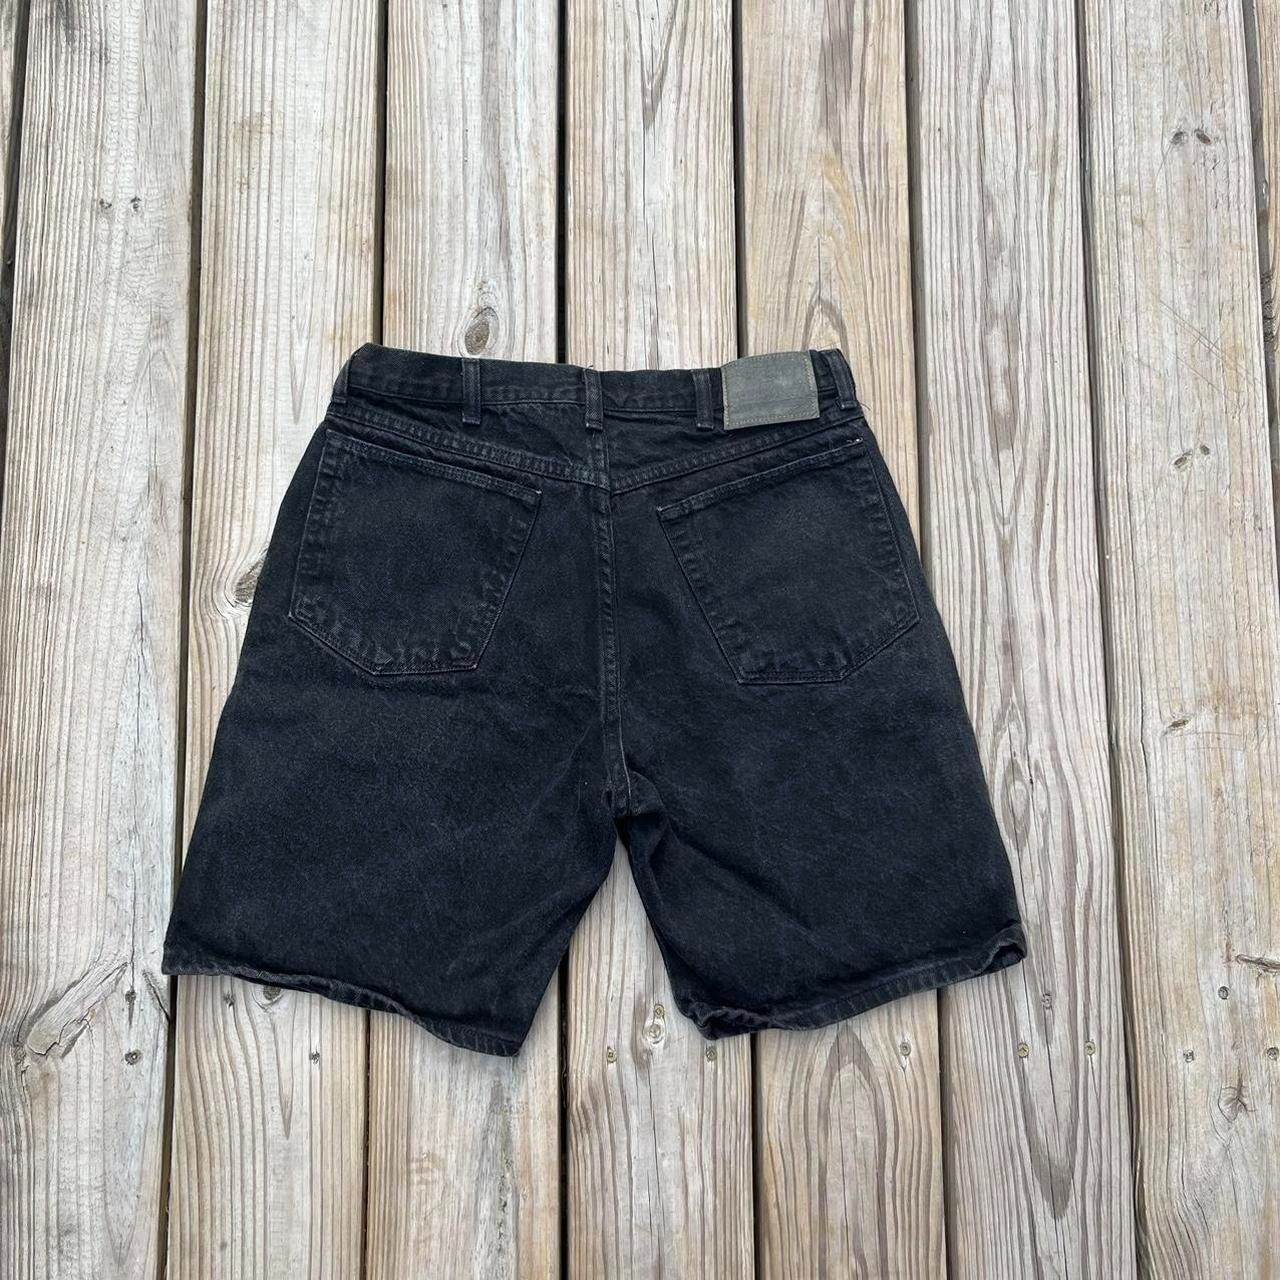 Vintage Vintage Wrangler Jorts Black denim shorts made in USA Size US 32 / EU 48 - 2 Preview